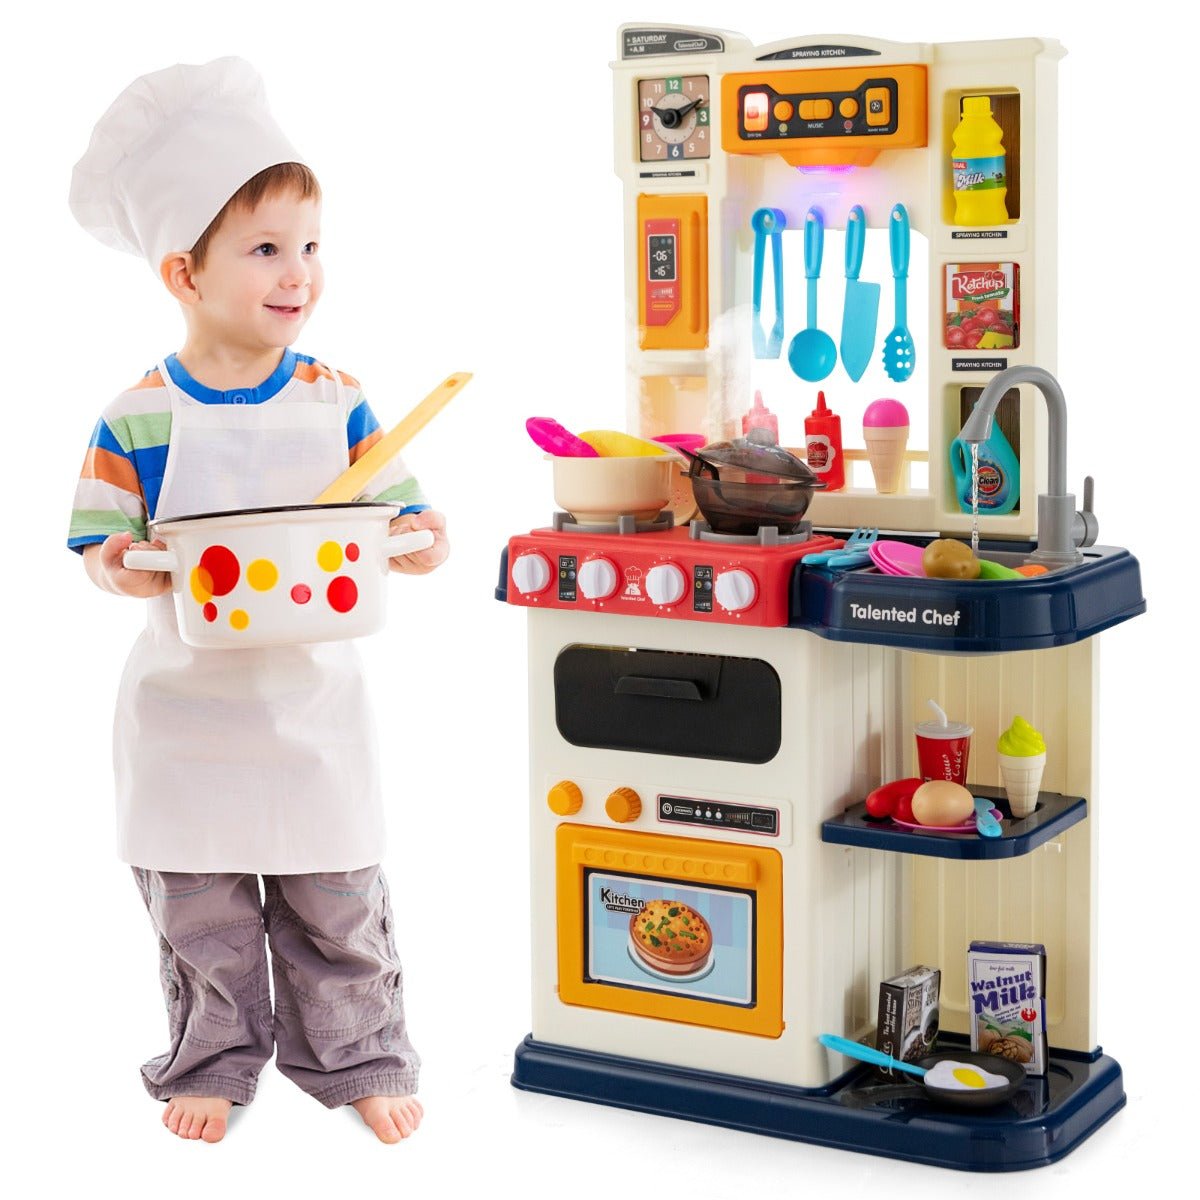 Fun-Filled Play: Kids Kitchen Set with 65-Piece Accessories & Pretend Steam